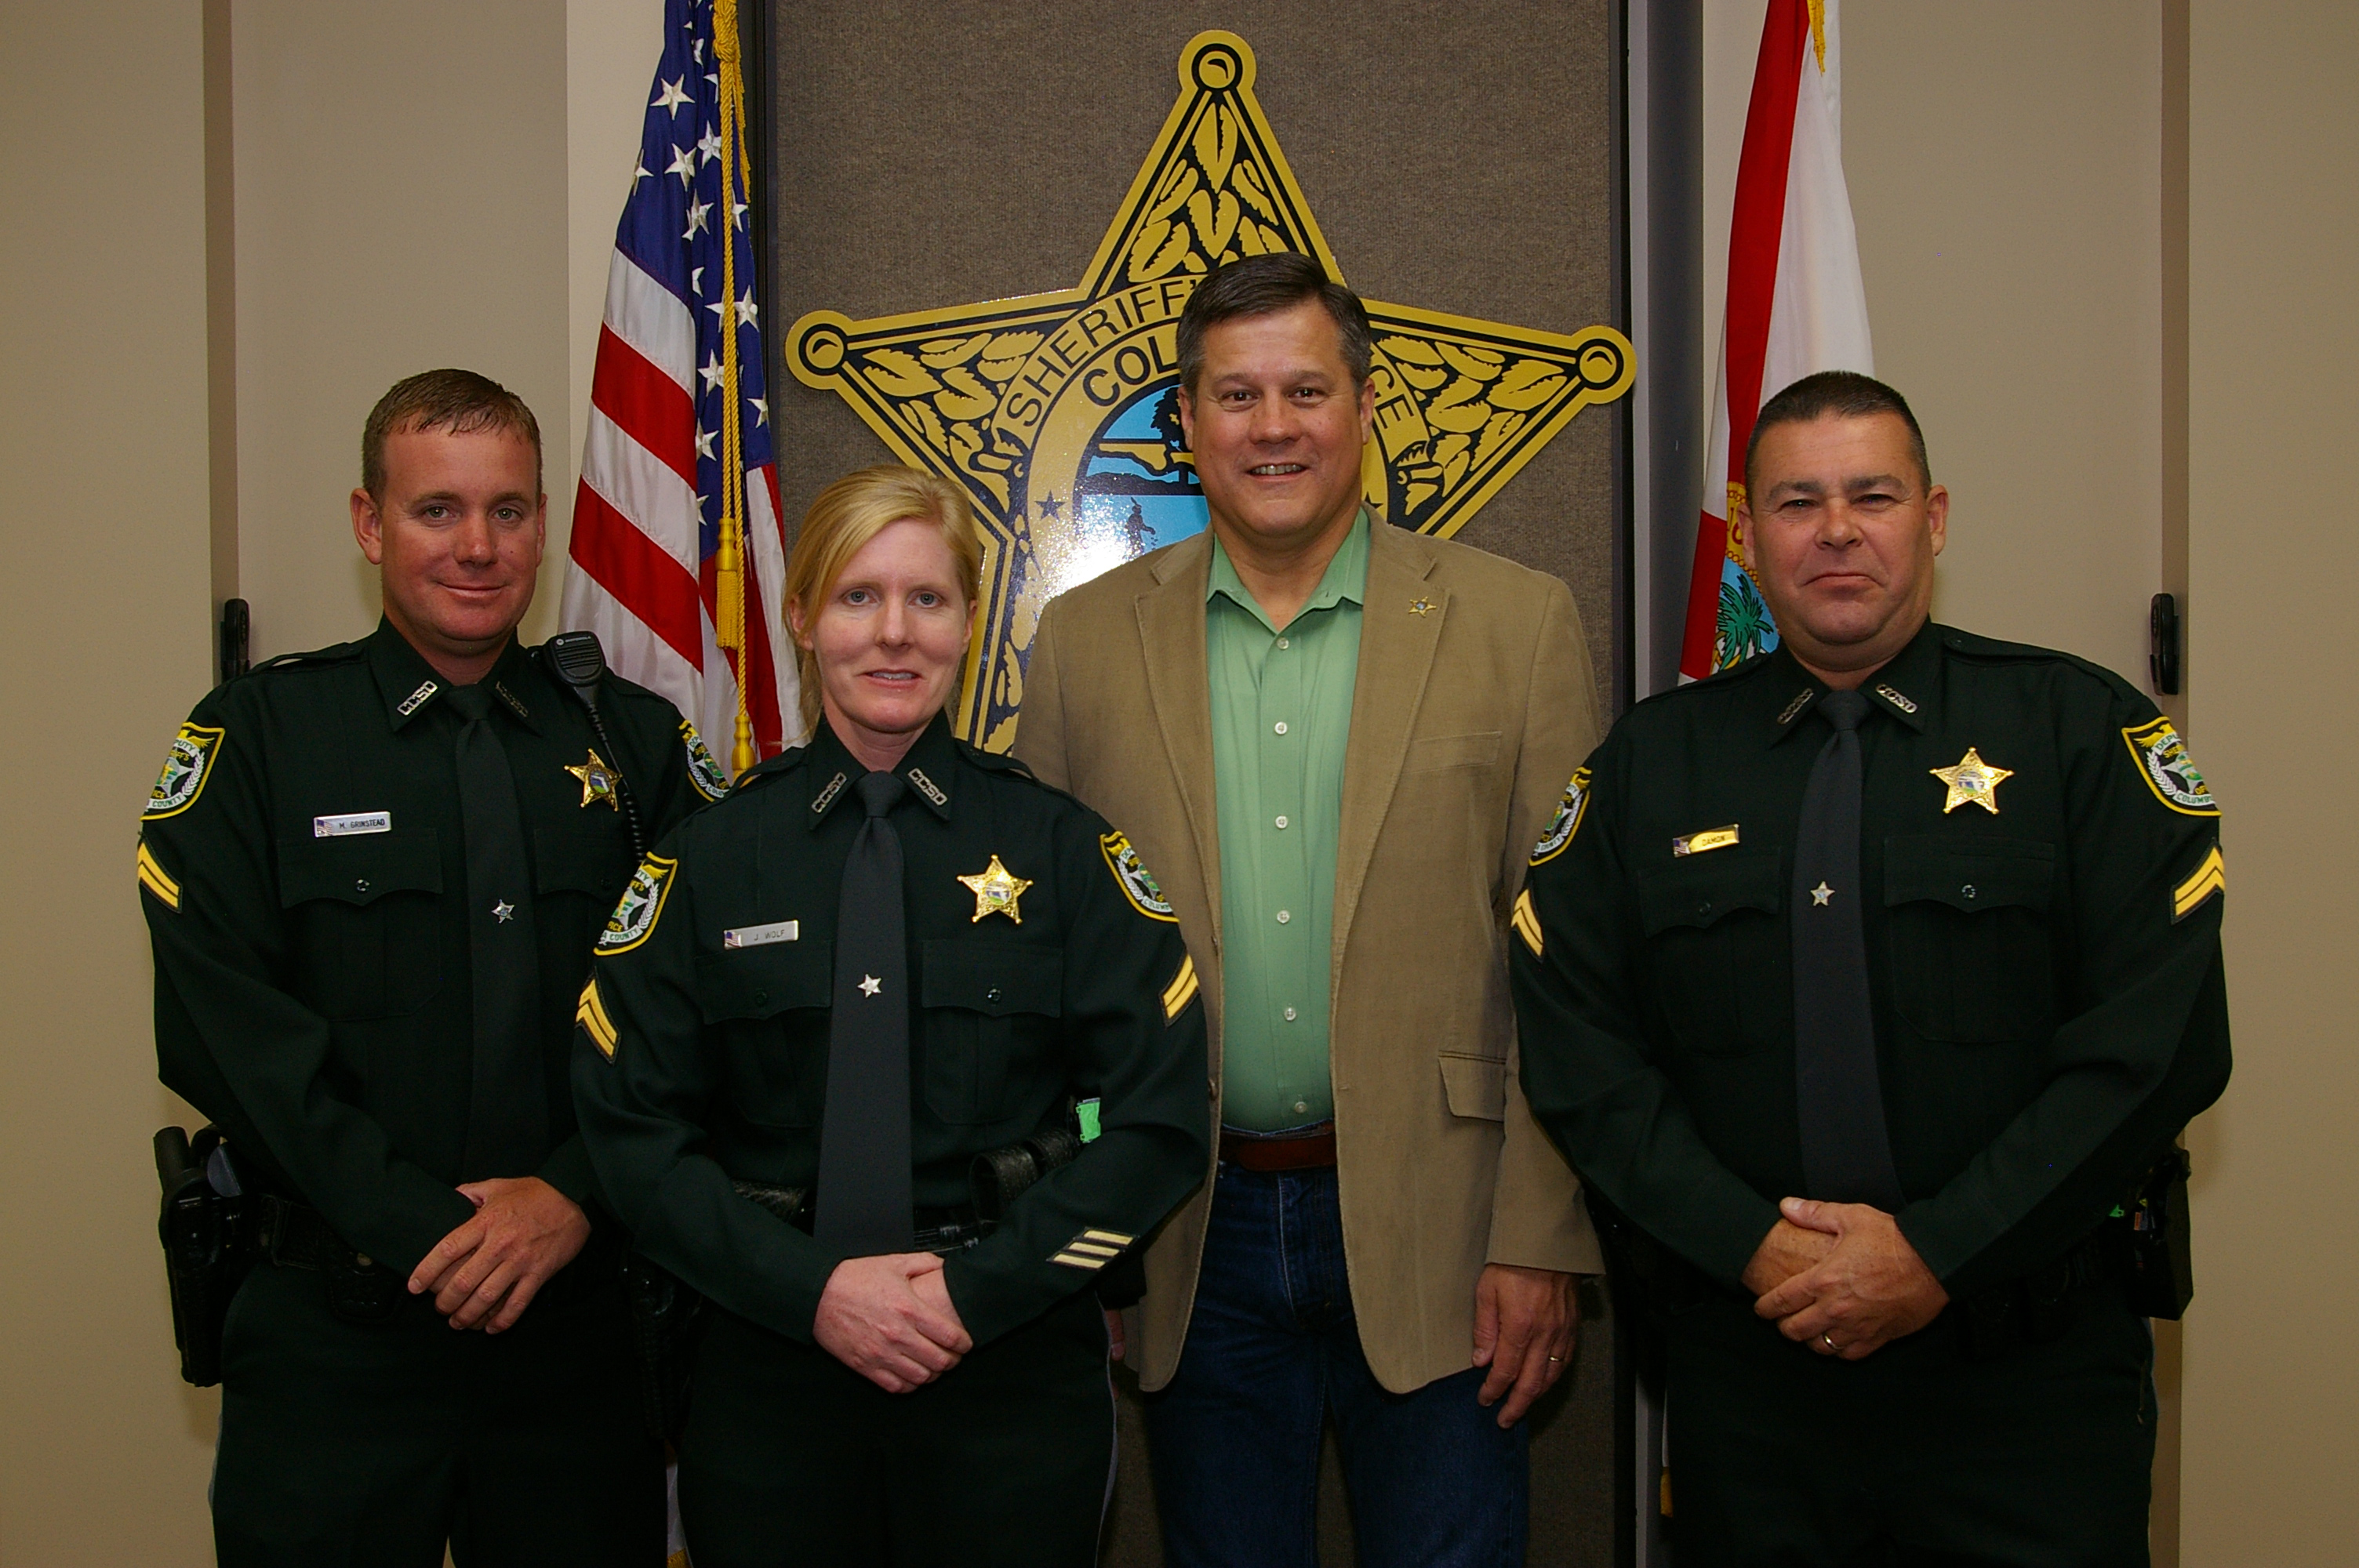 L-R Sgt. Matt Grinstead, Sgt. Jennifer Wolf, Sheriff Mark Hunter, and Sgt. Rick Damon